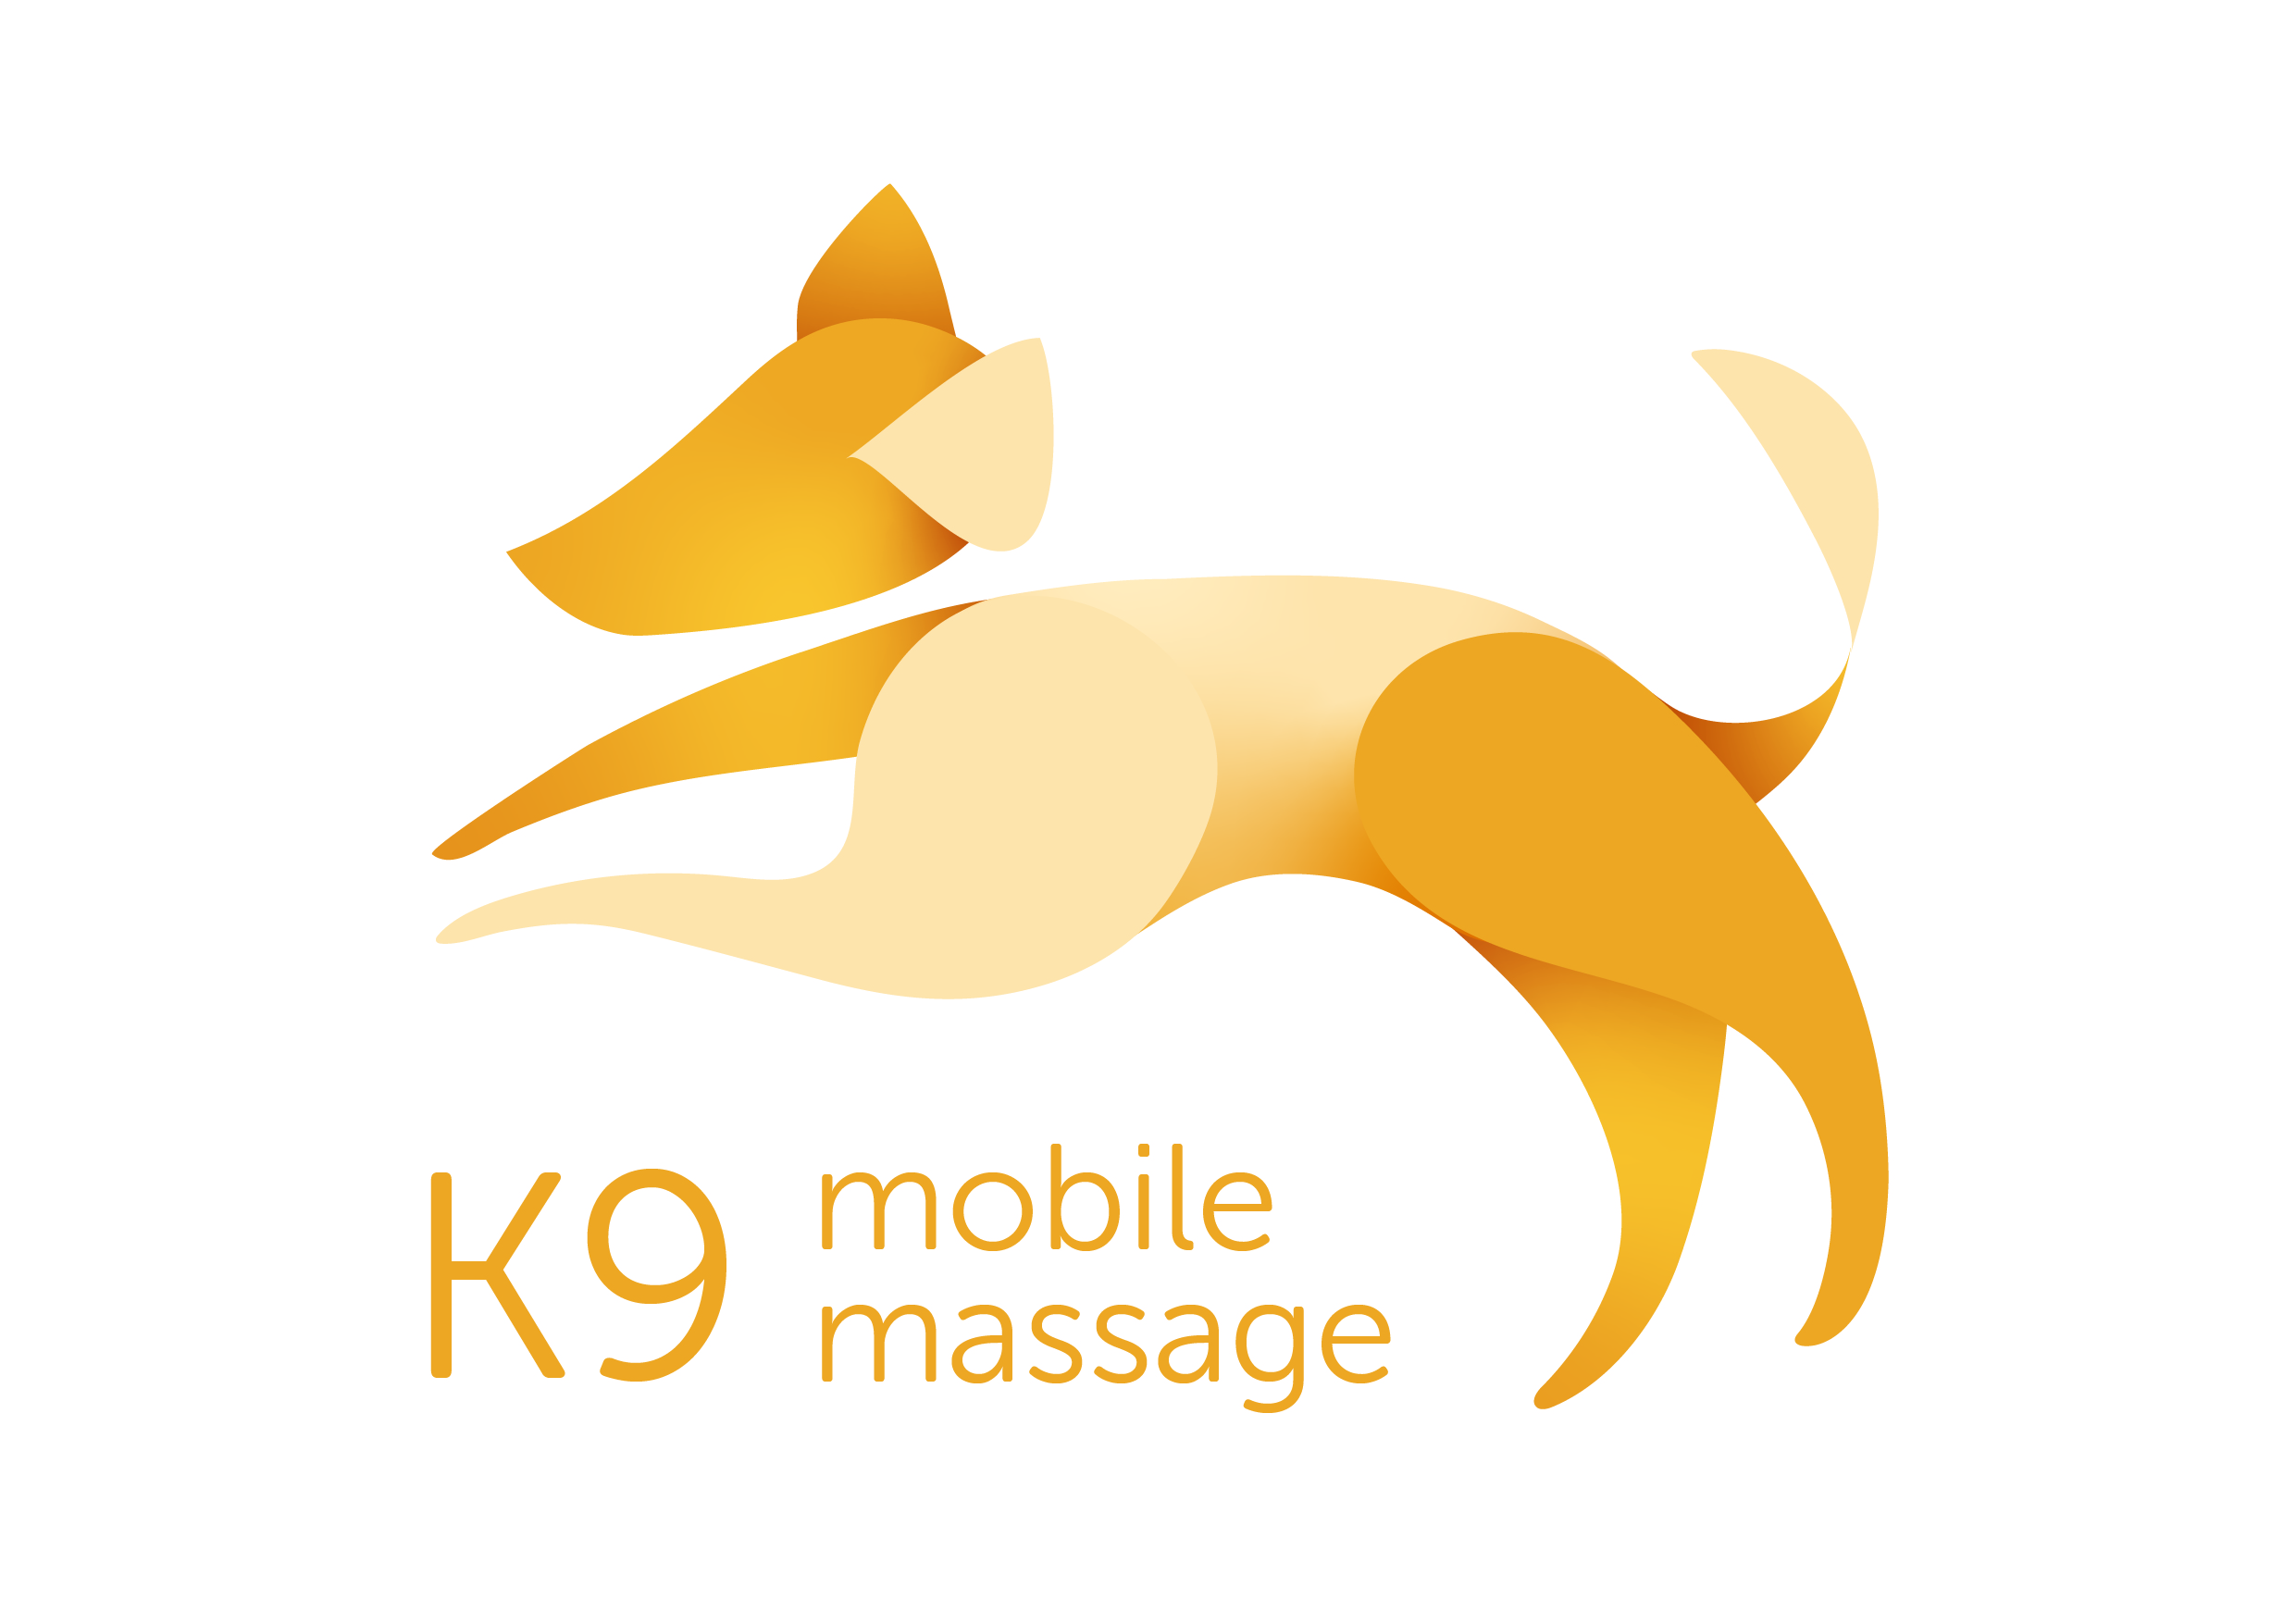 K9 mobile massage_logos-28